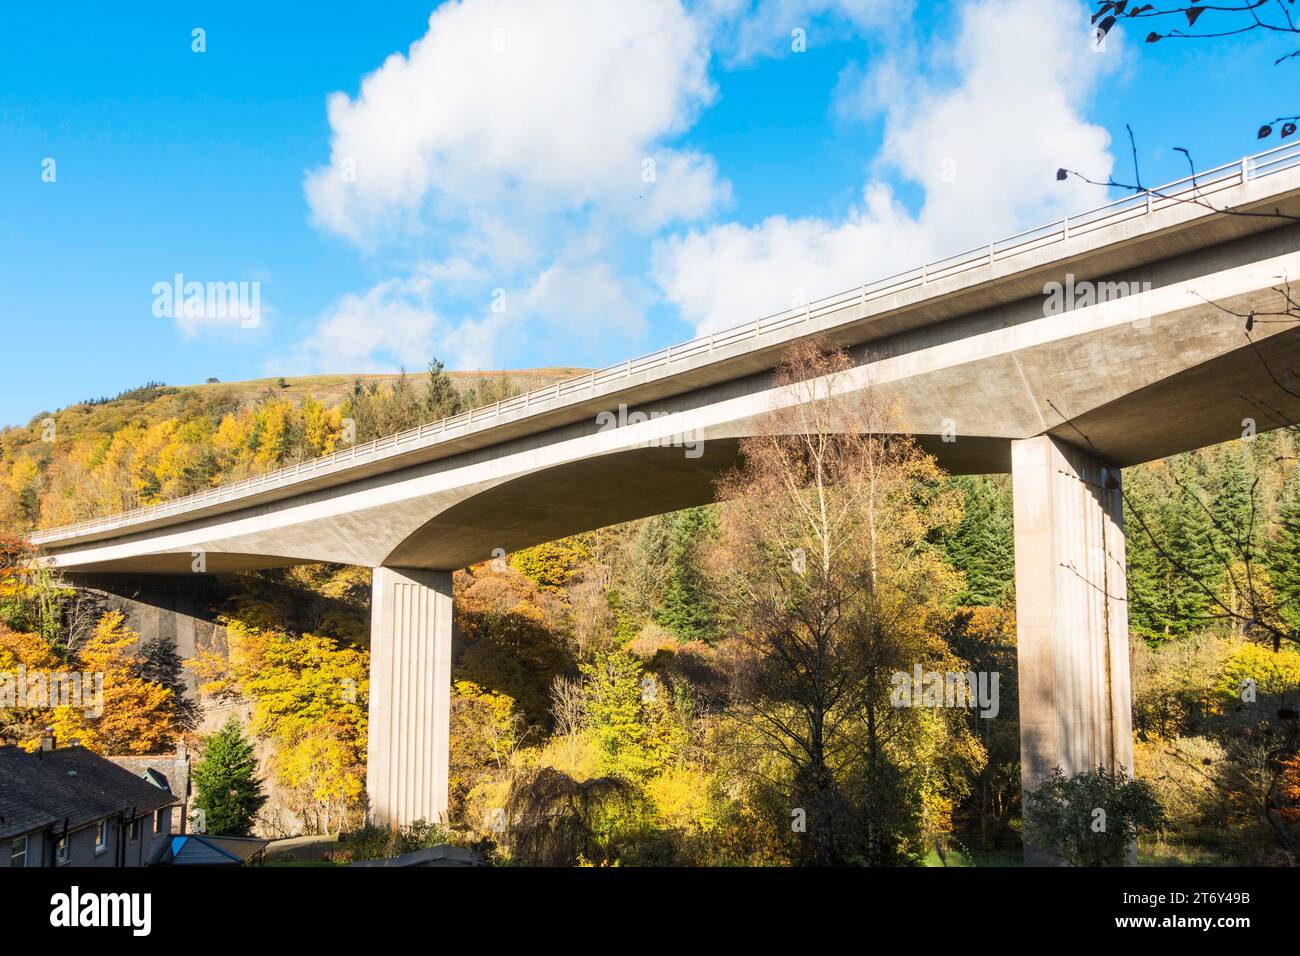 Le pont en béton précontraint primé transportant l'A66 sur la rivière Greta près de Keswick, Cumbria, Angleterre, Royaume-Uni Banque D'Images